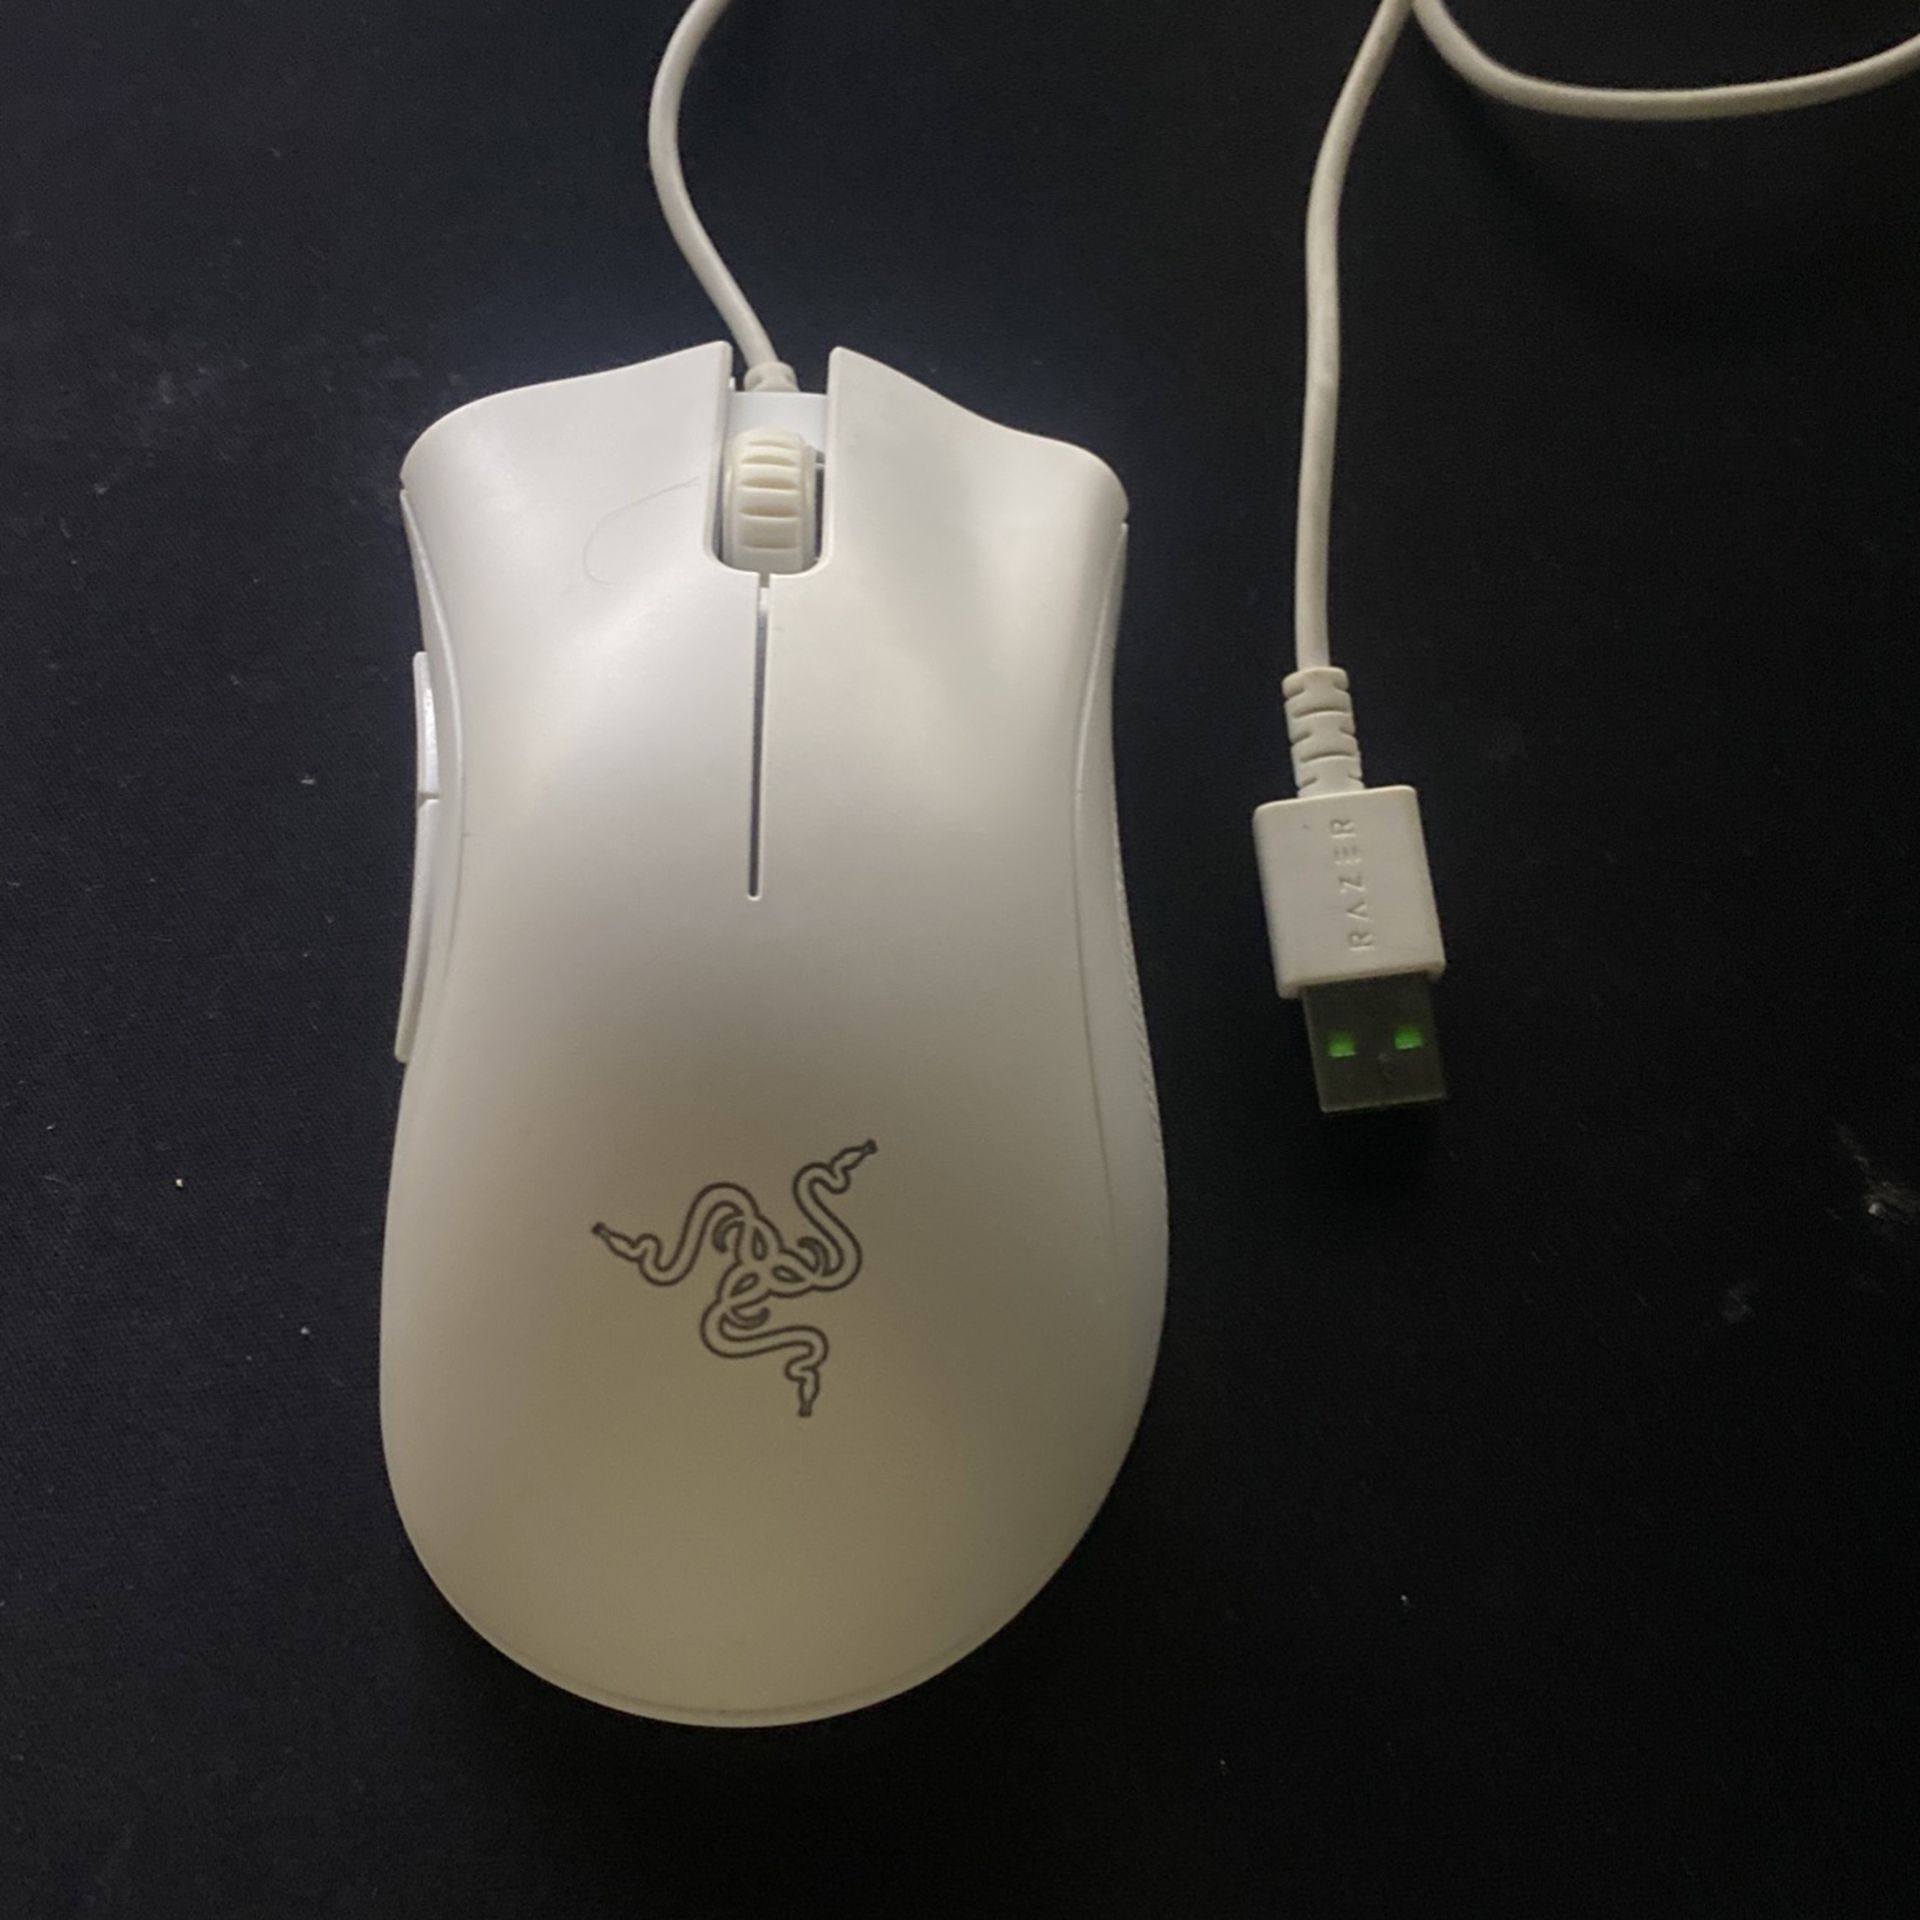 White Razer Deathadder Gaming Mouse